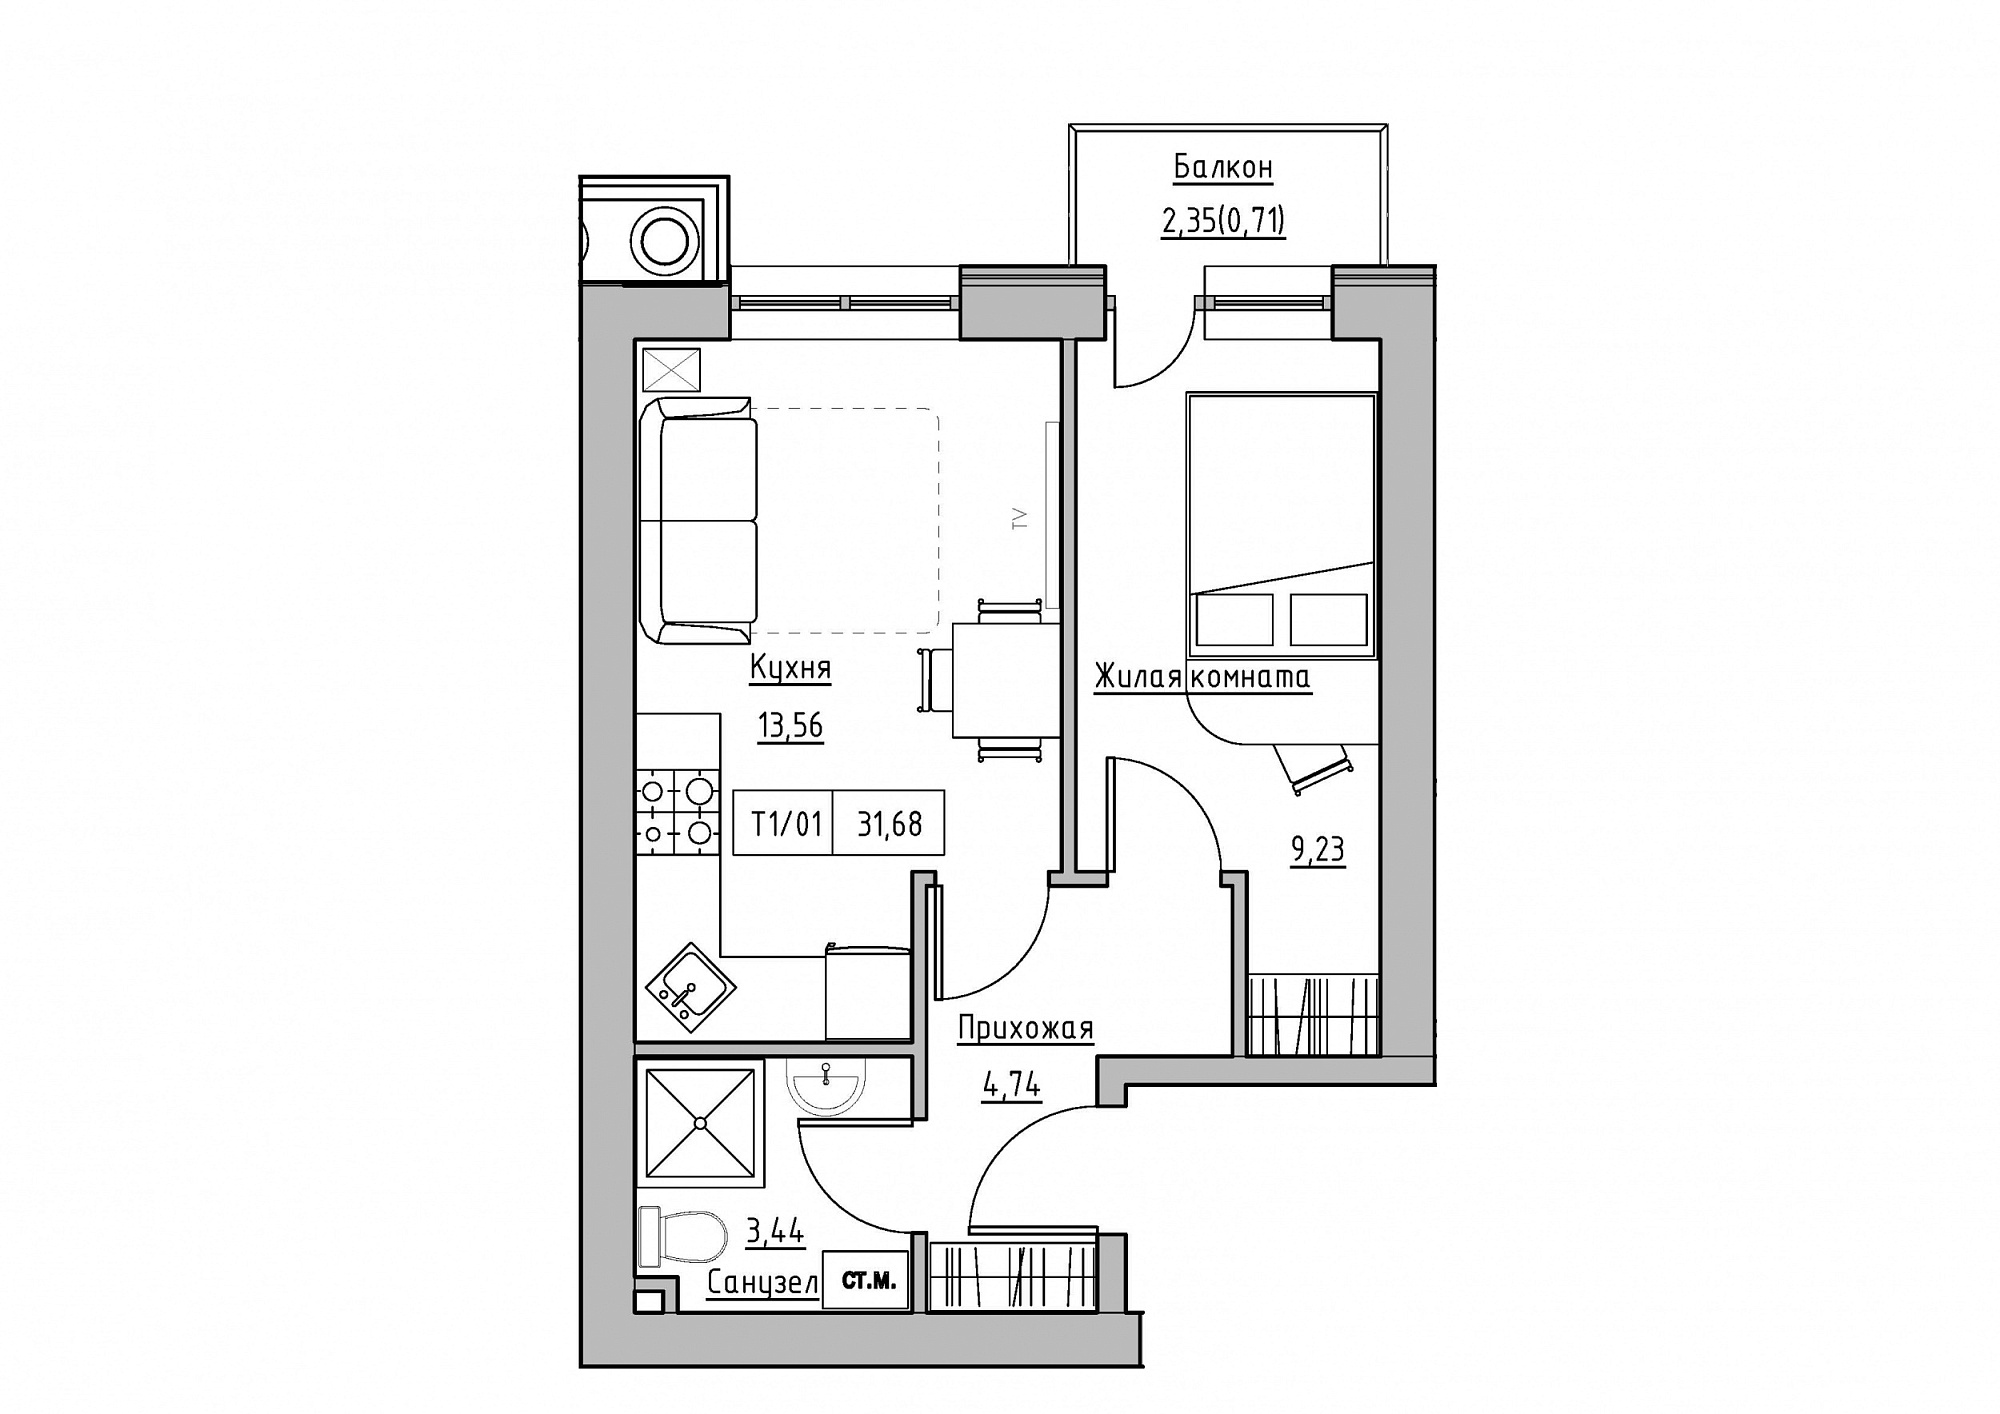 Планування 1-к квартира площею 31.68м2, KS-011-05/0016.